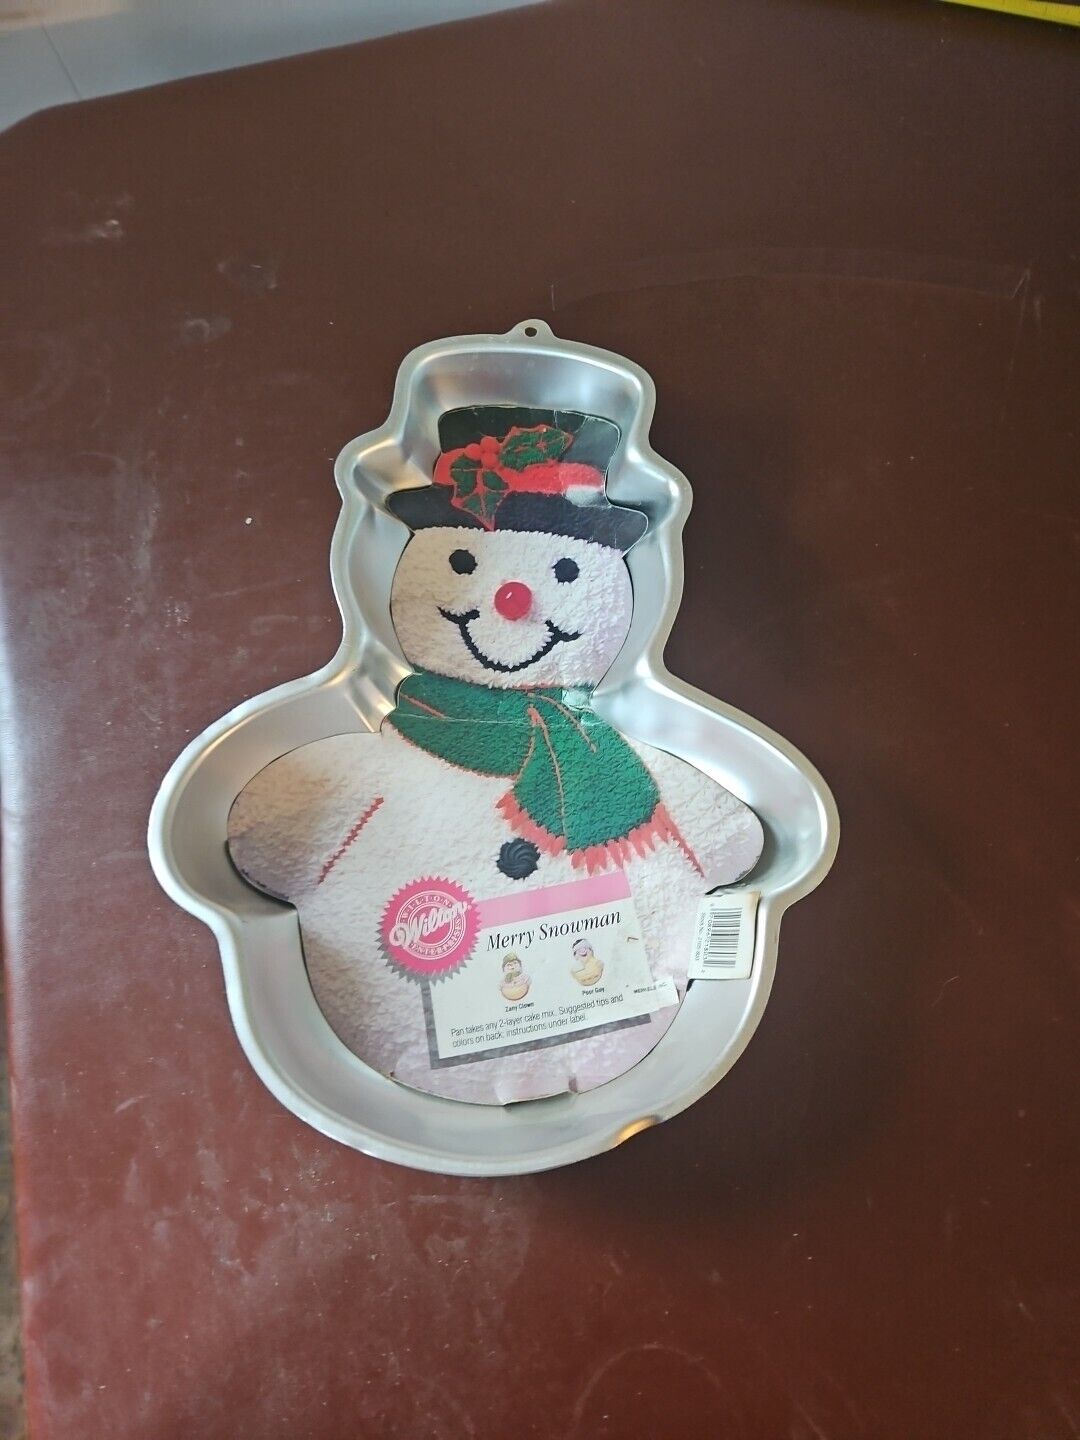 Merry Snowman Wilton Cake Pan Vintage 1988